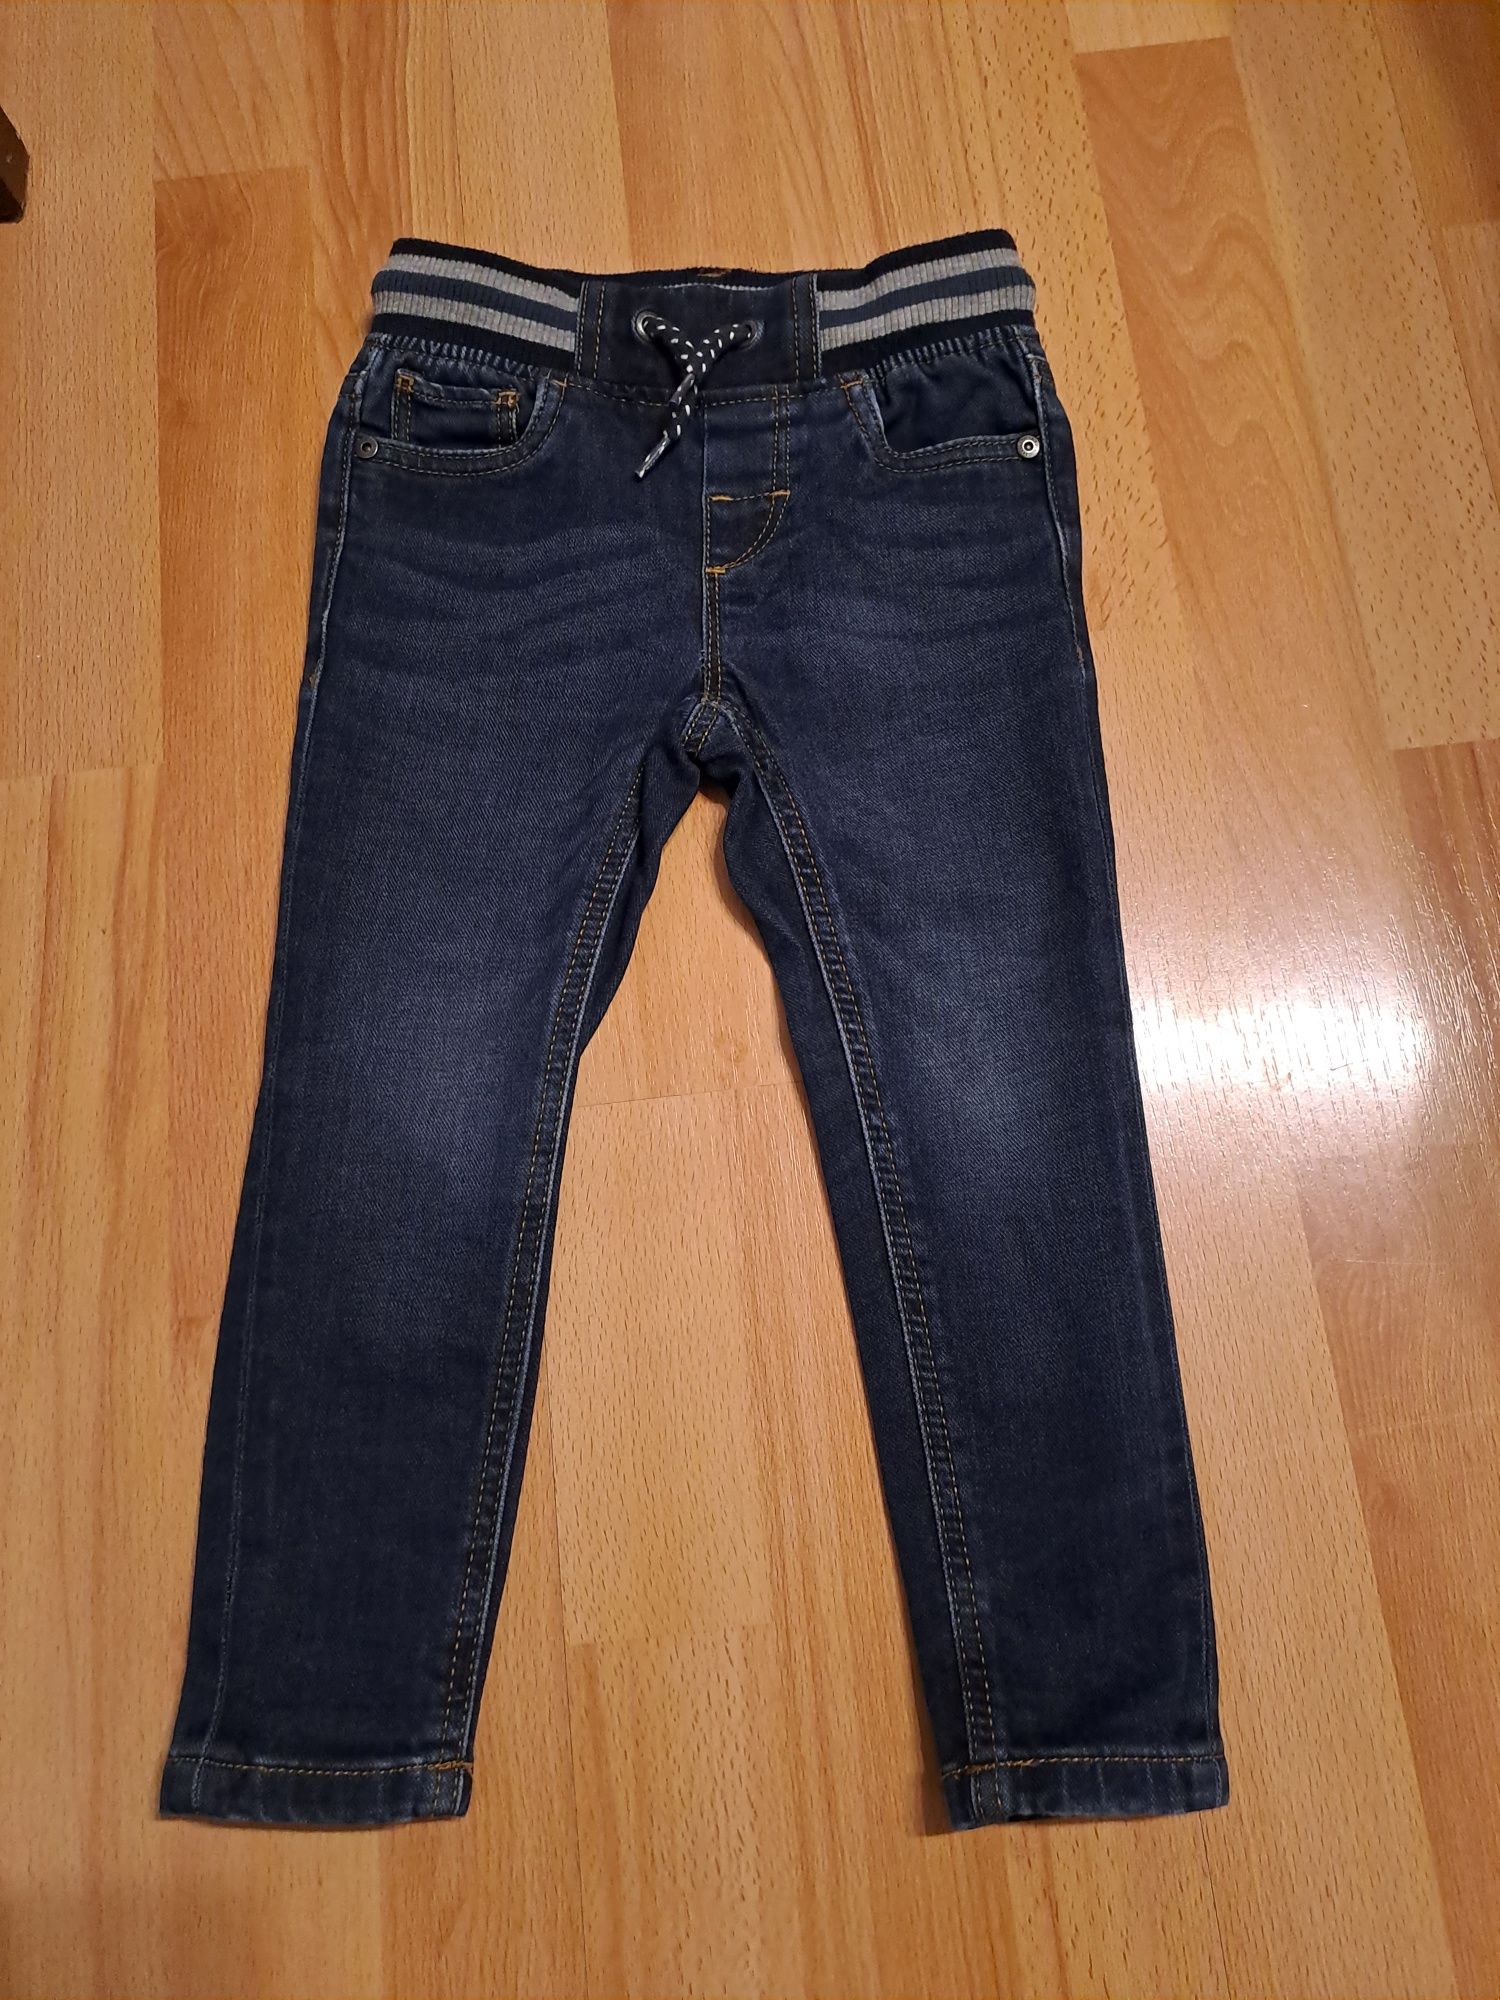 Spodnie jeansy  dla chłopca roz 98